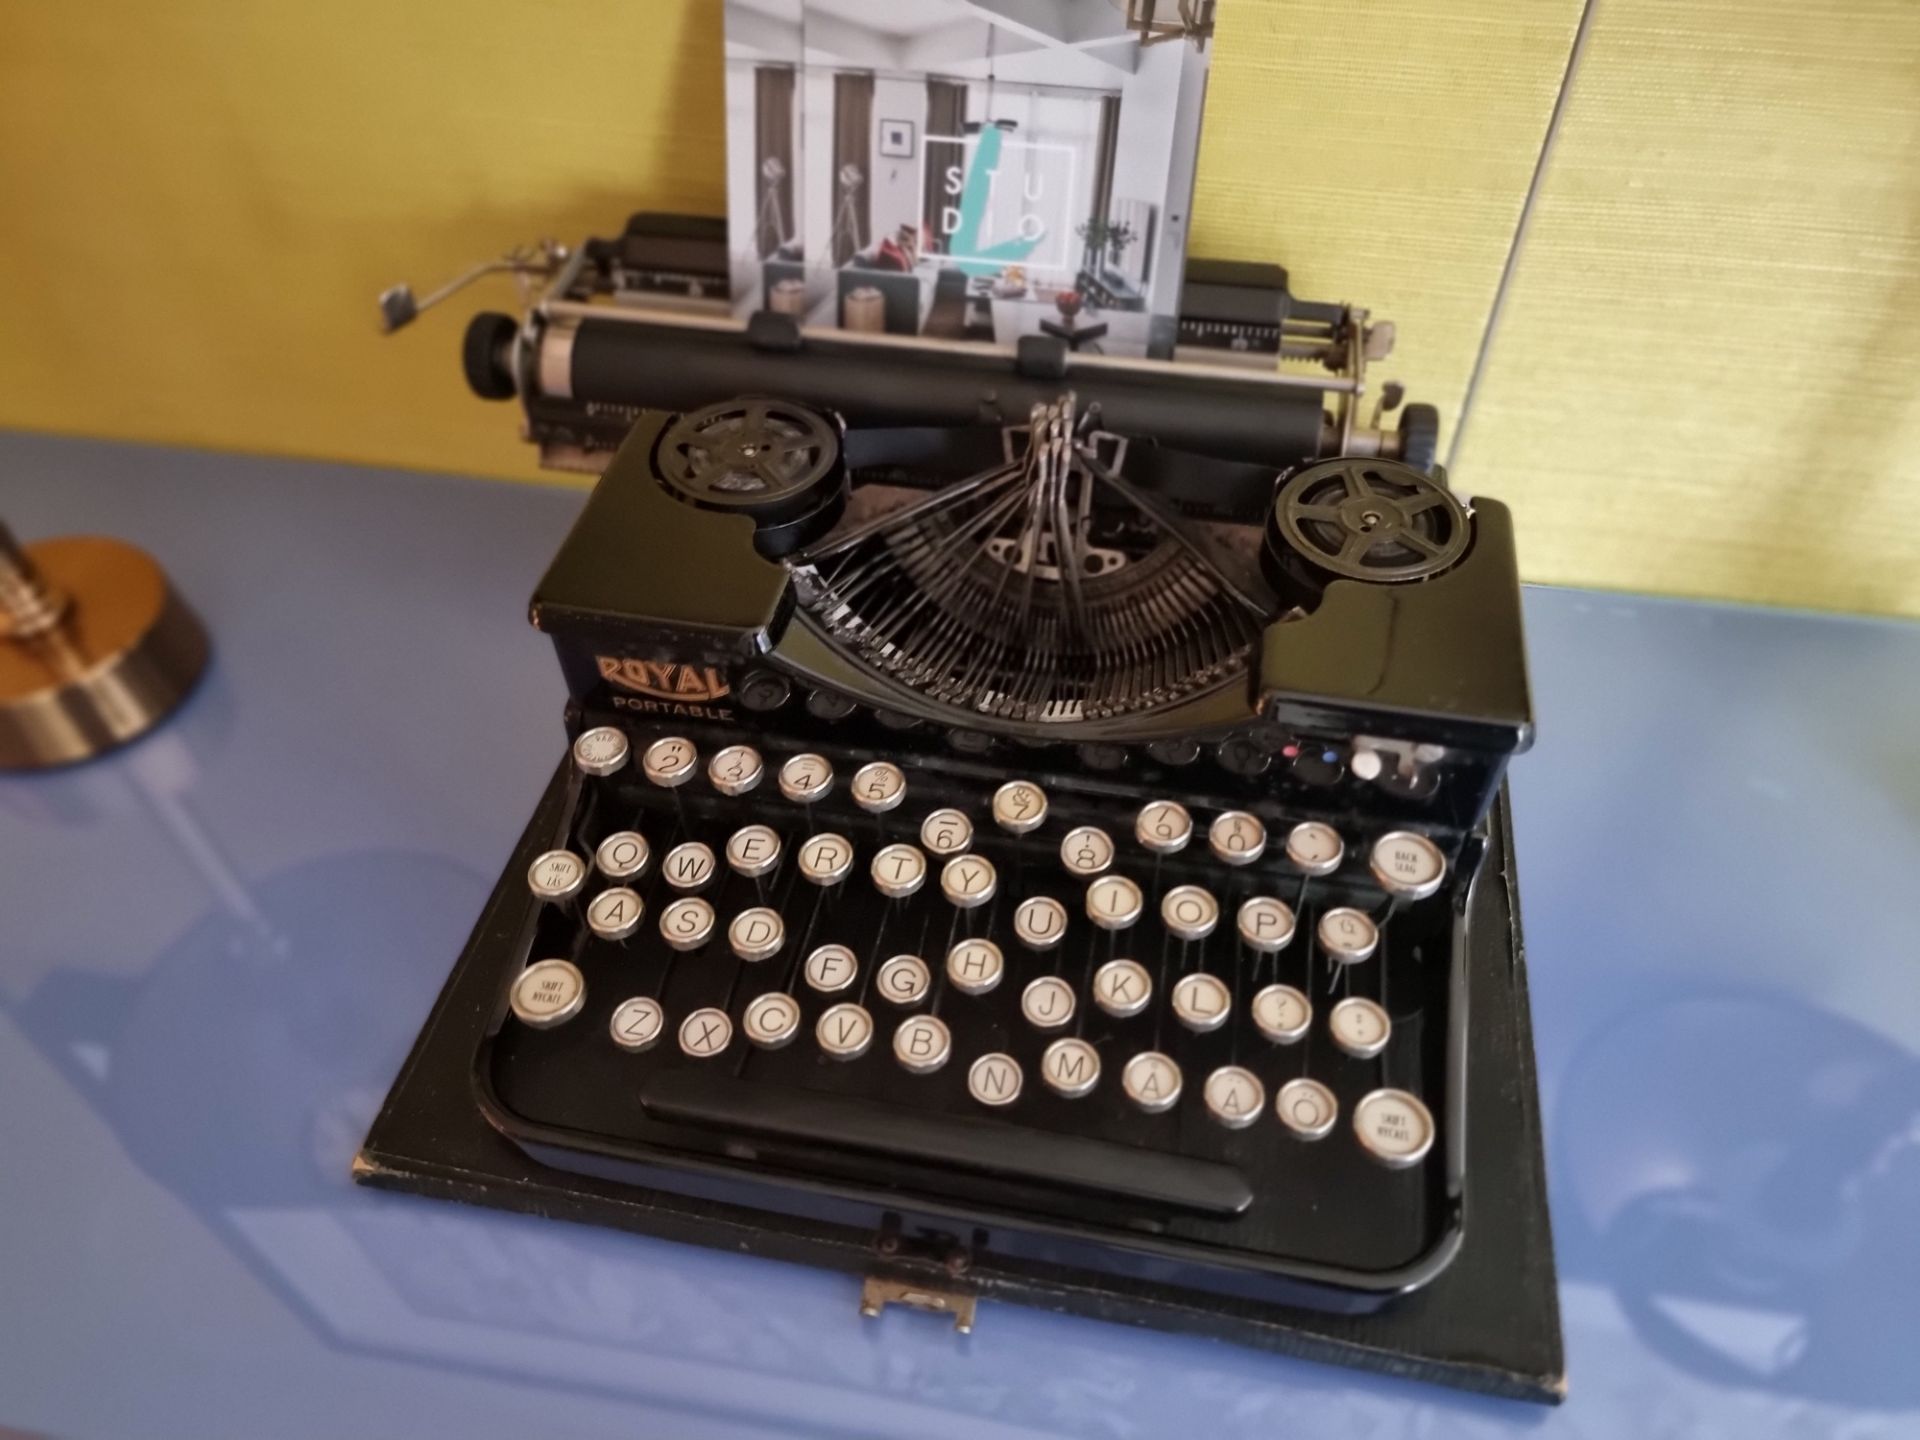 A Royal Portable American Black Typewriter 1930s (Apt 16)